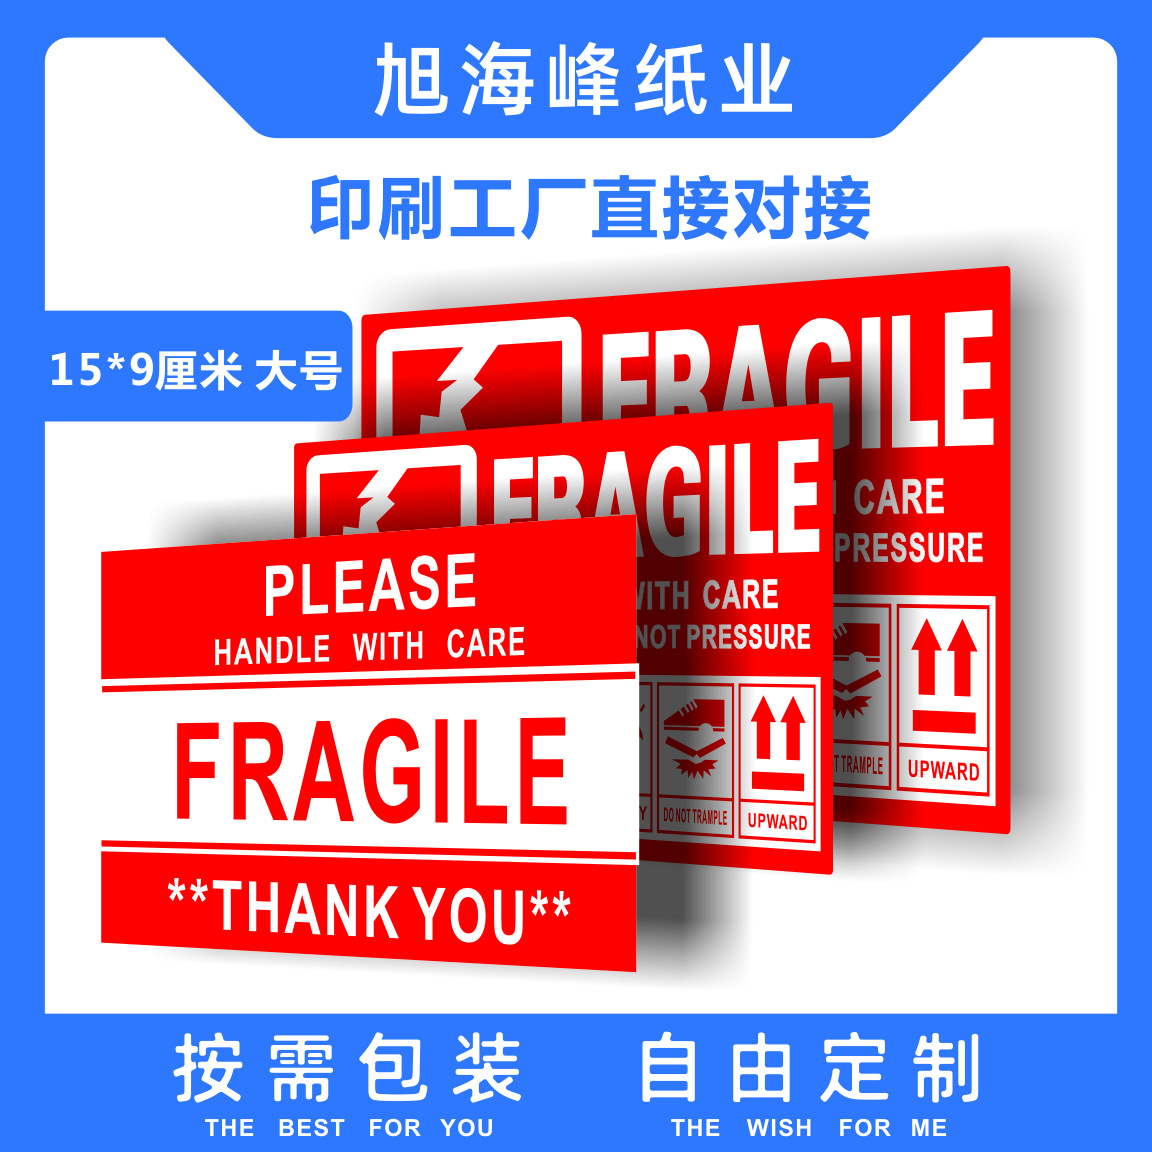 现货英文中文易碎警示标签外贸跨境电商物流唛头 fragile警示贴纸